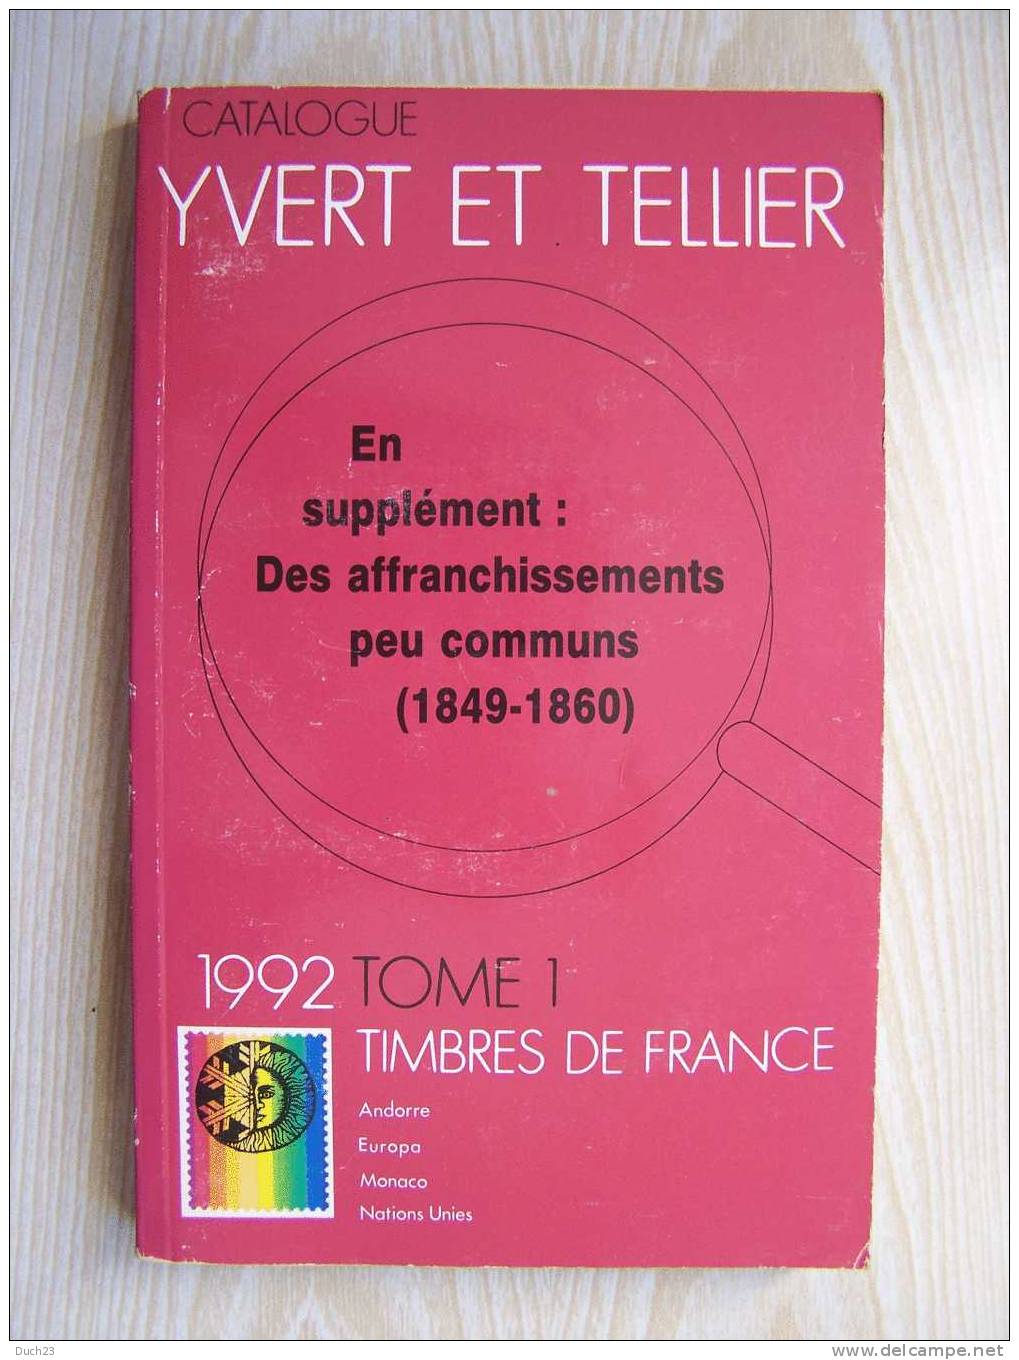 CATALOGUE DE COTATION YVERT ET TELLIER ANNEE 1992 TOME 1 TRES BON ETAT   REF CD - France